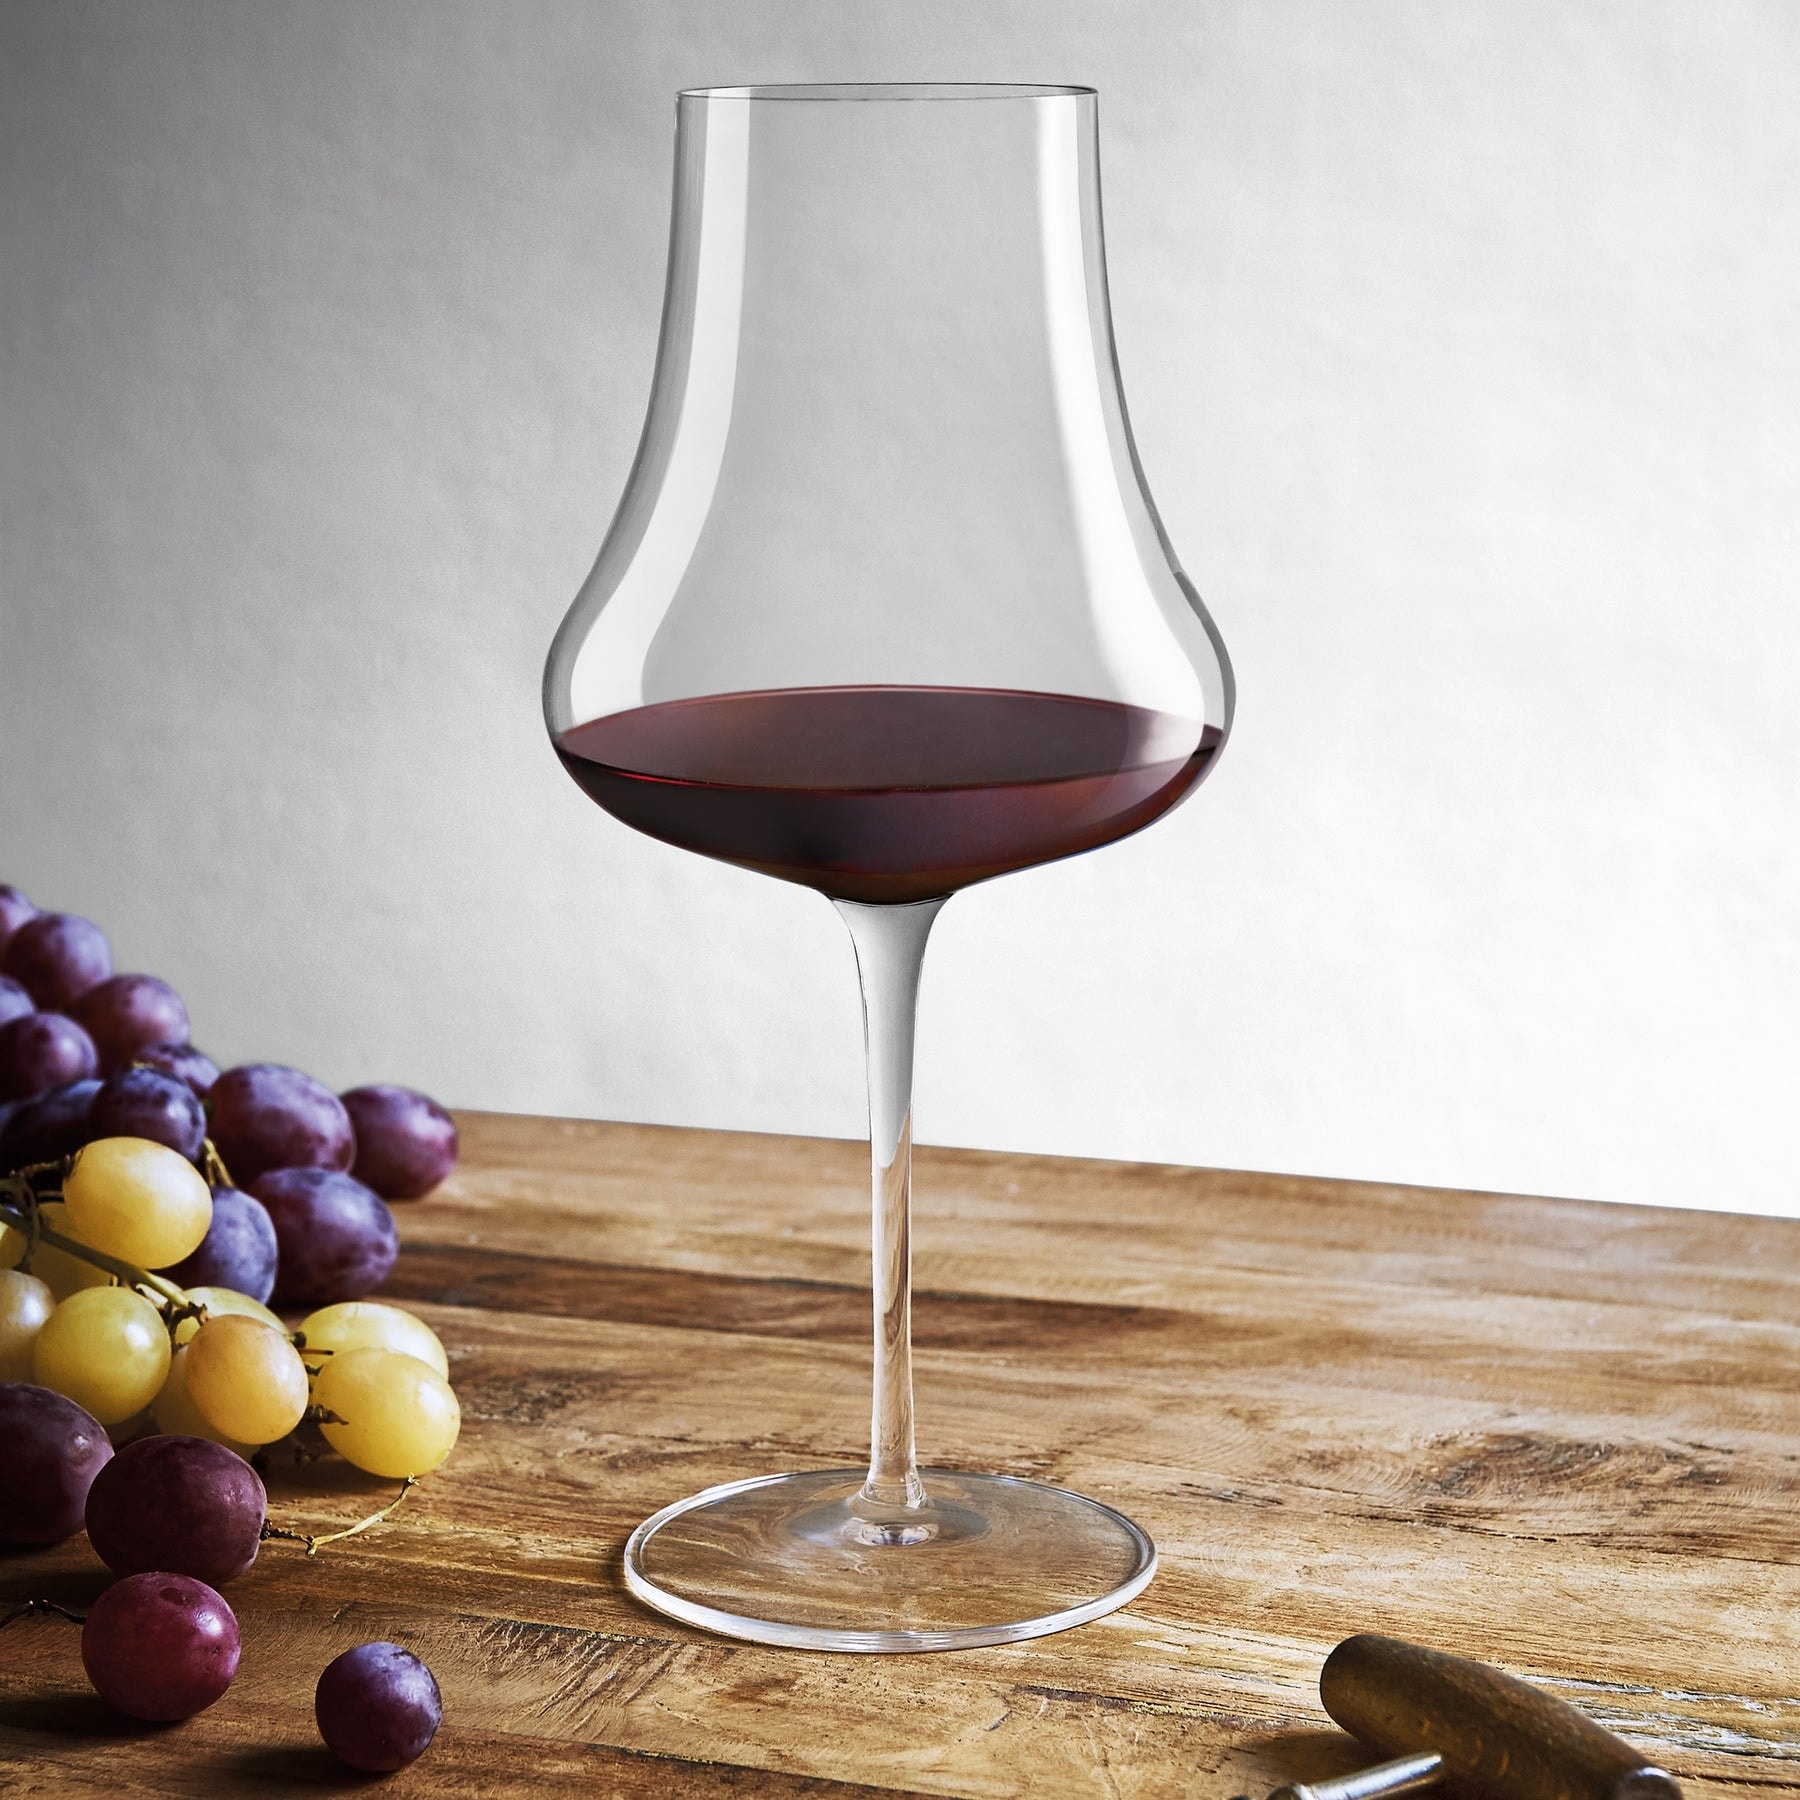 Luigi Bormioli Crescendo Bordeaux Red Wine Glass 4 pack